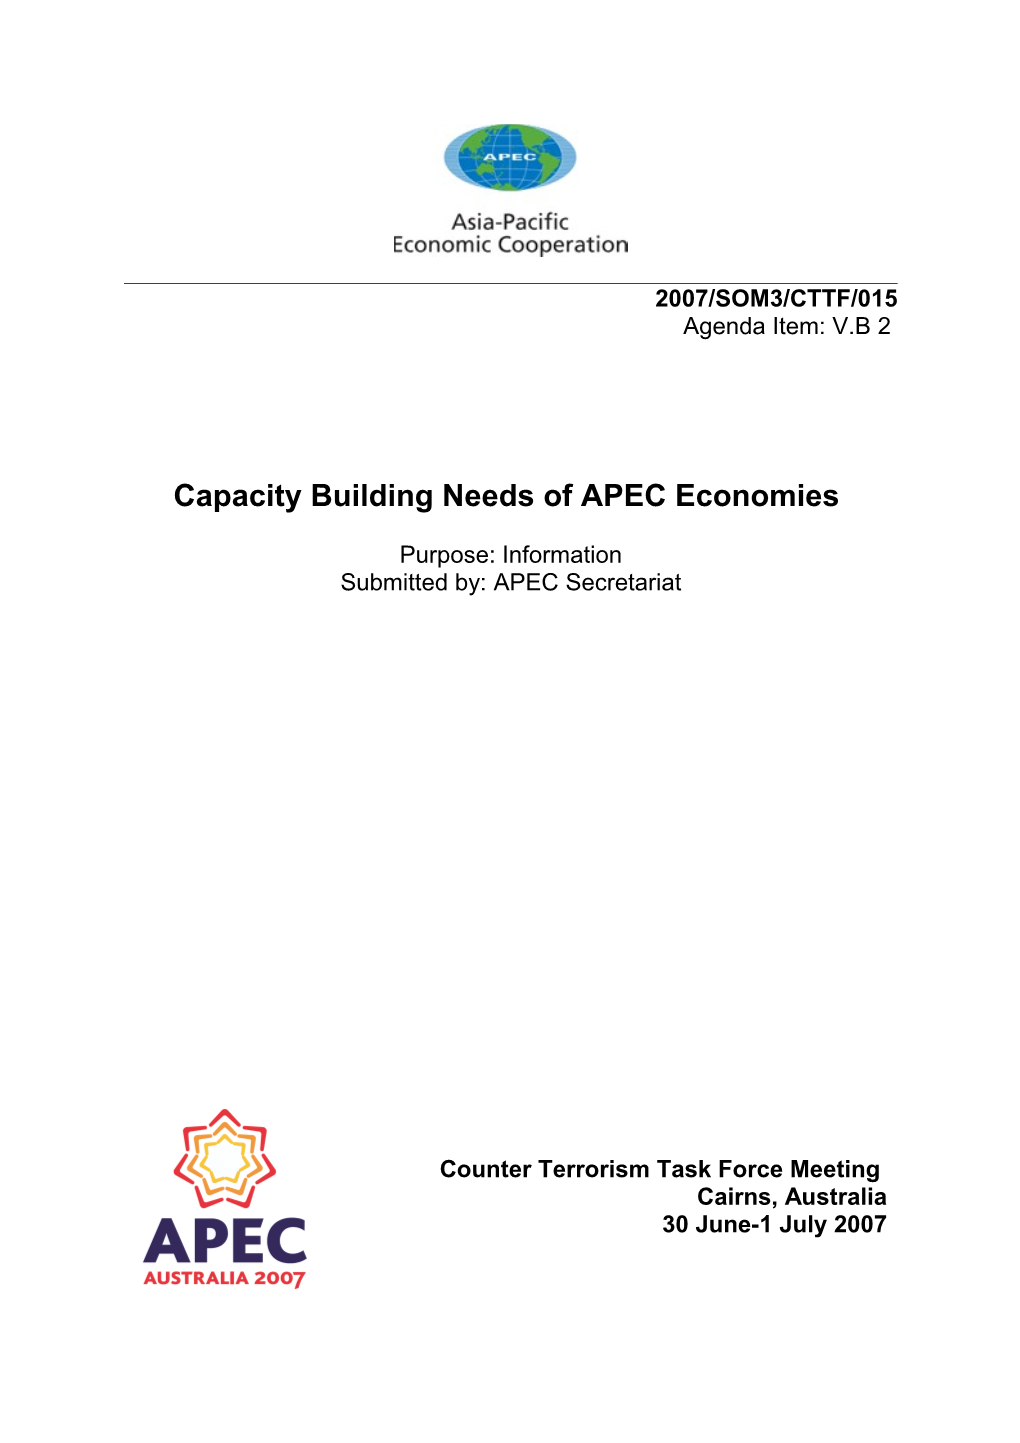 Capacitybuilding Needs of APEC Economies